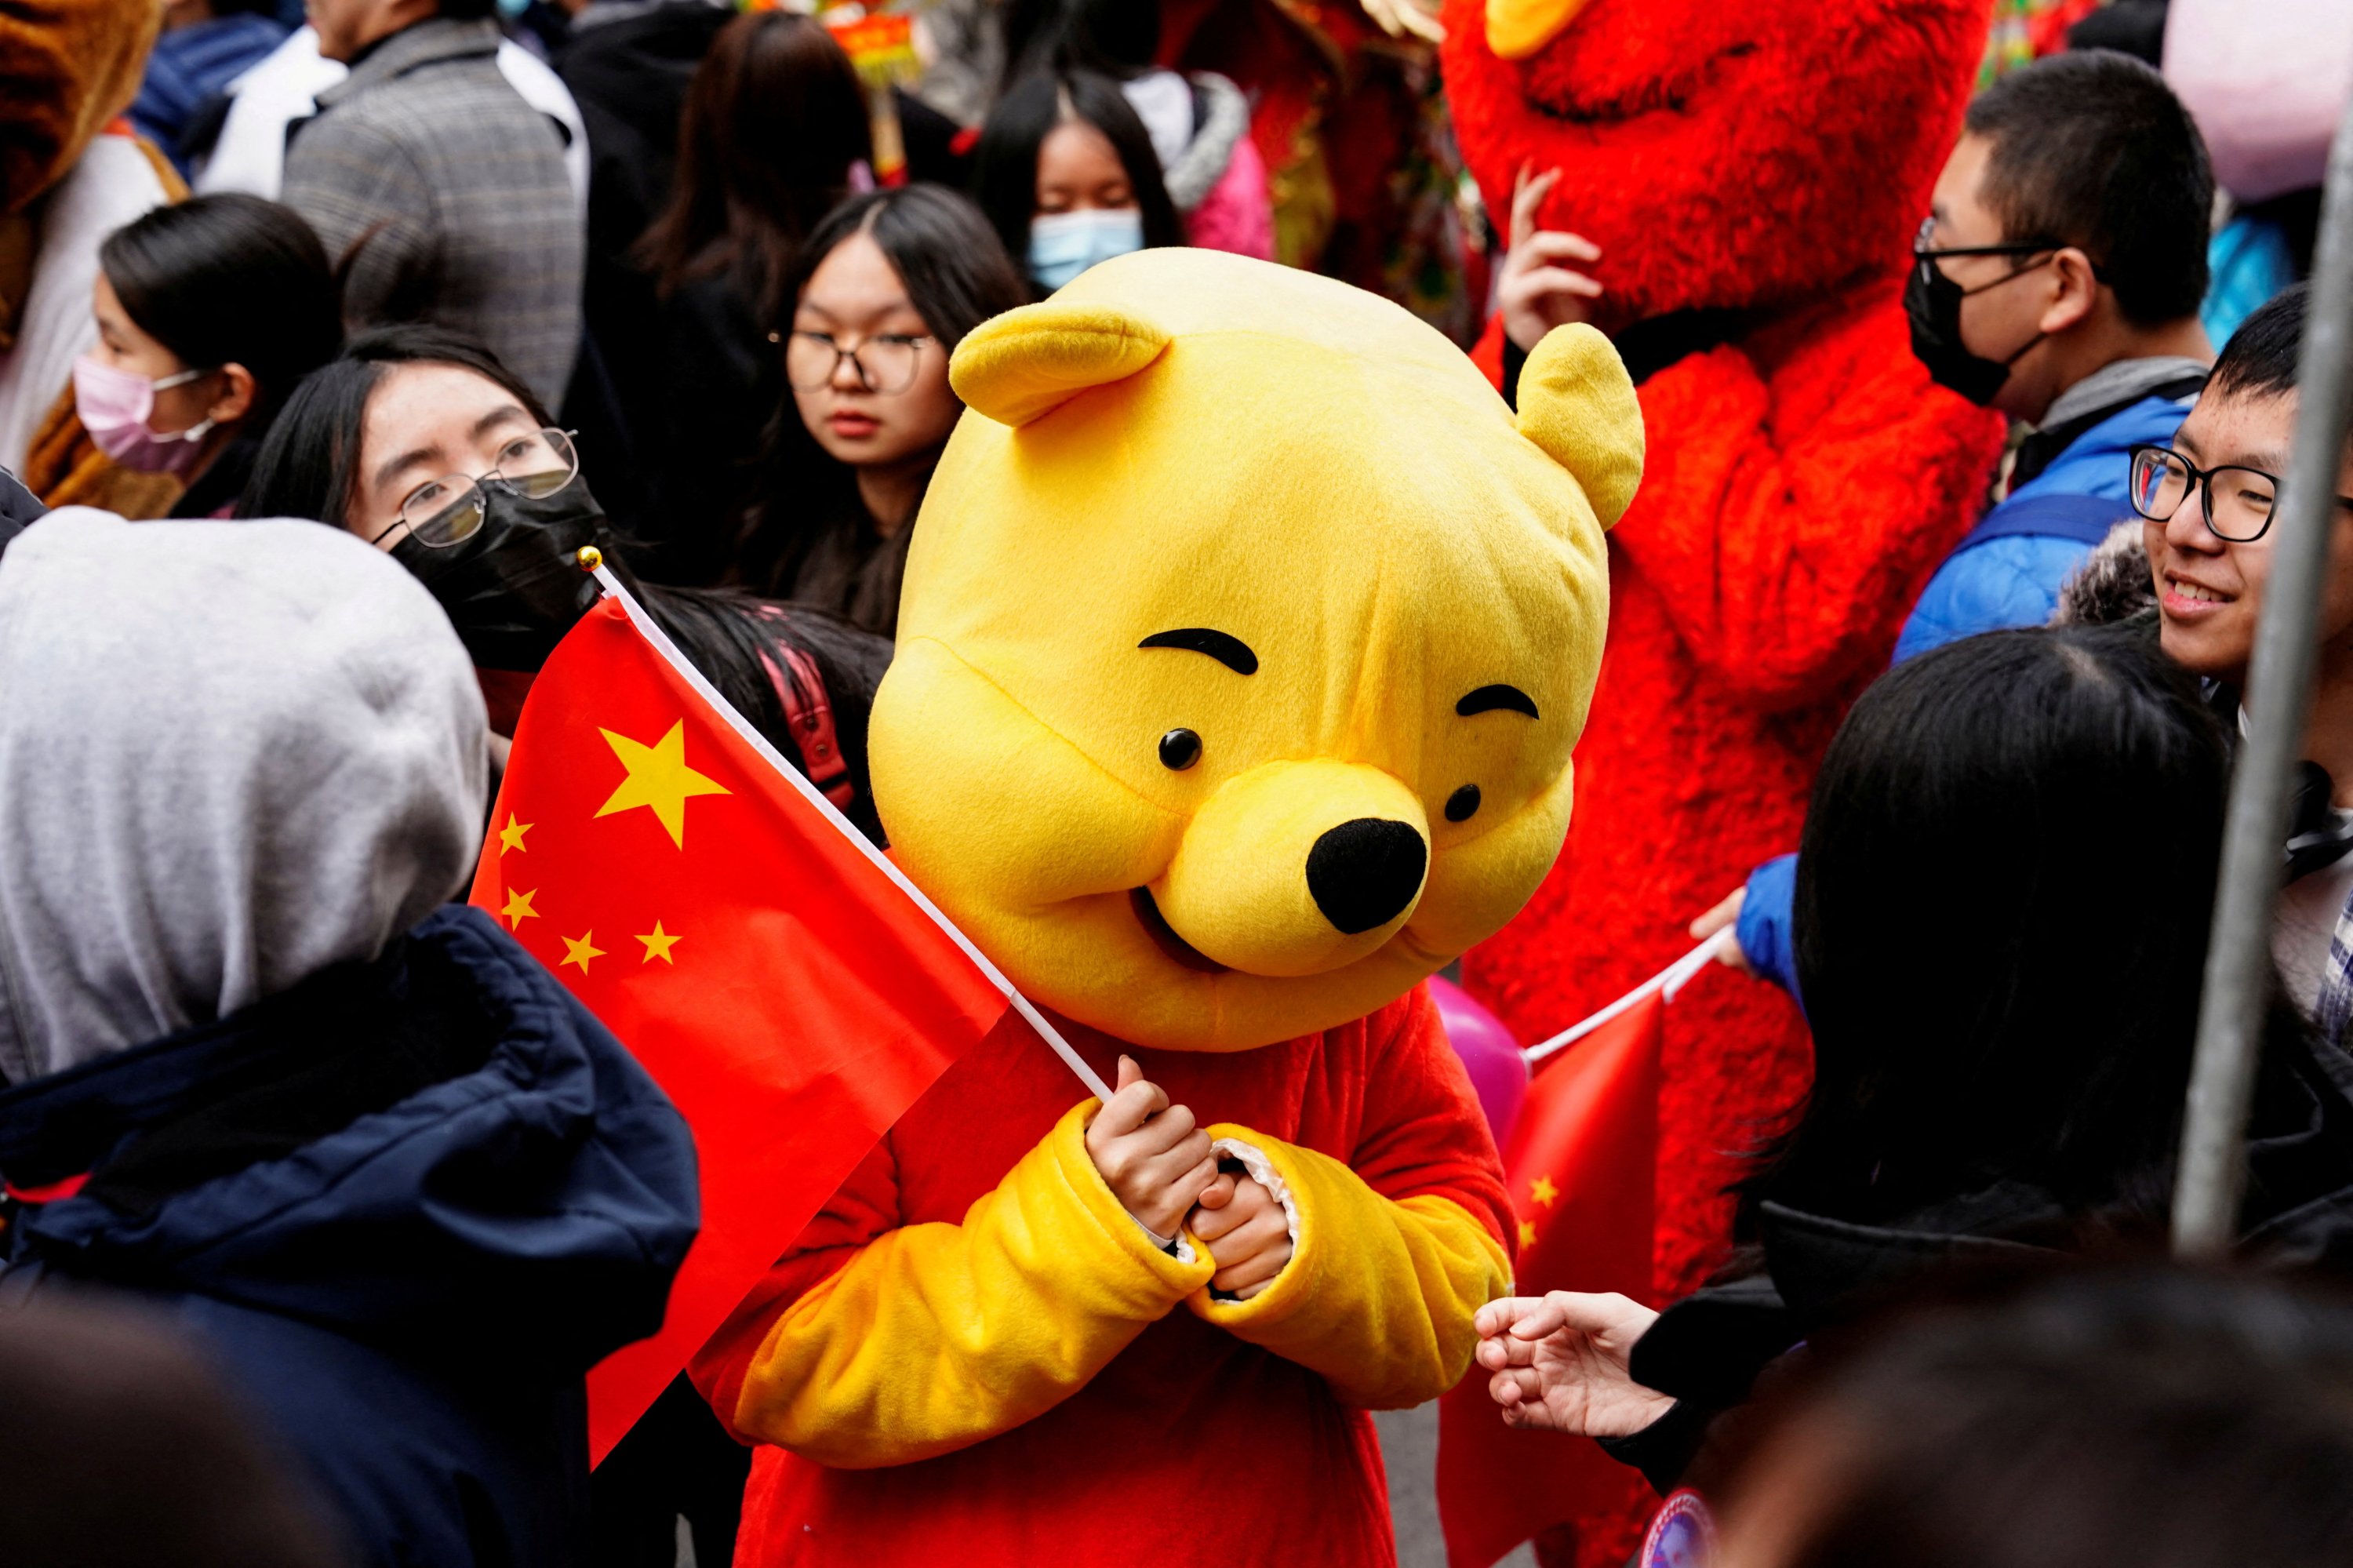 Seorang peserta pawai dengan kostum Winnie the Pooh mengibarkan bendera Tiongkok sebelum pawai Tahun Baru Imlek merayakan Tahun Kelinci di kawasan Chinatown di New York, AS, 12 Februari 2023. (Foto Reuters)